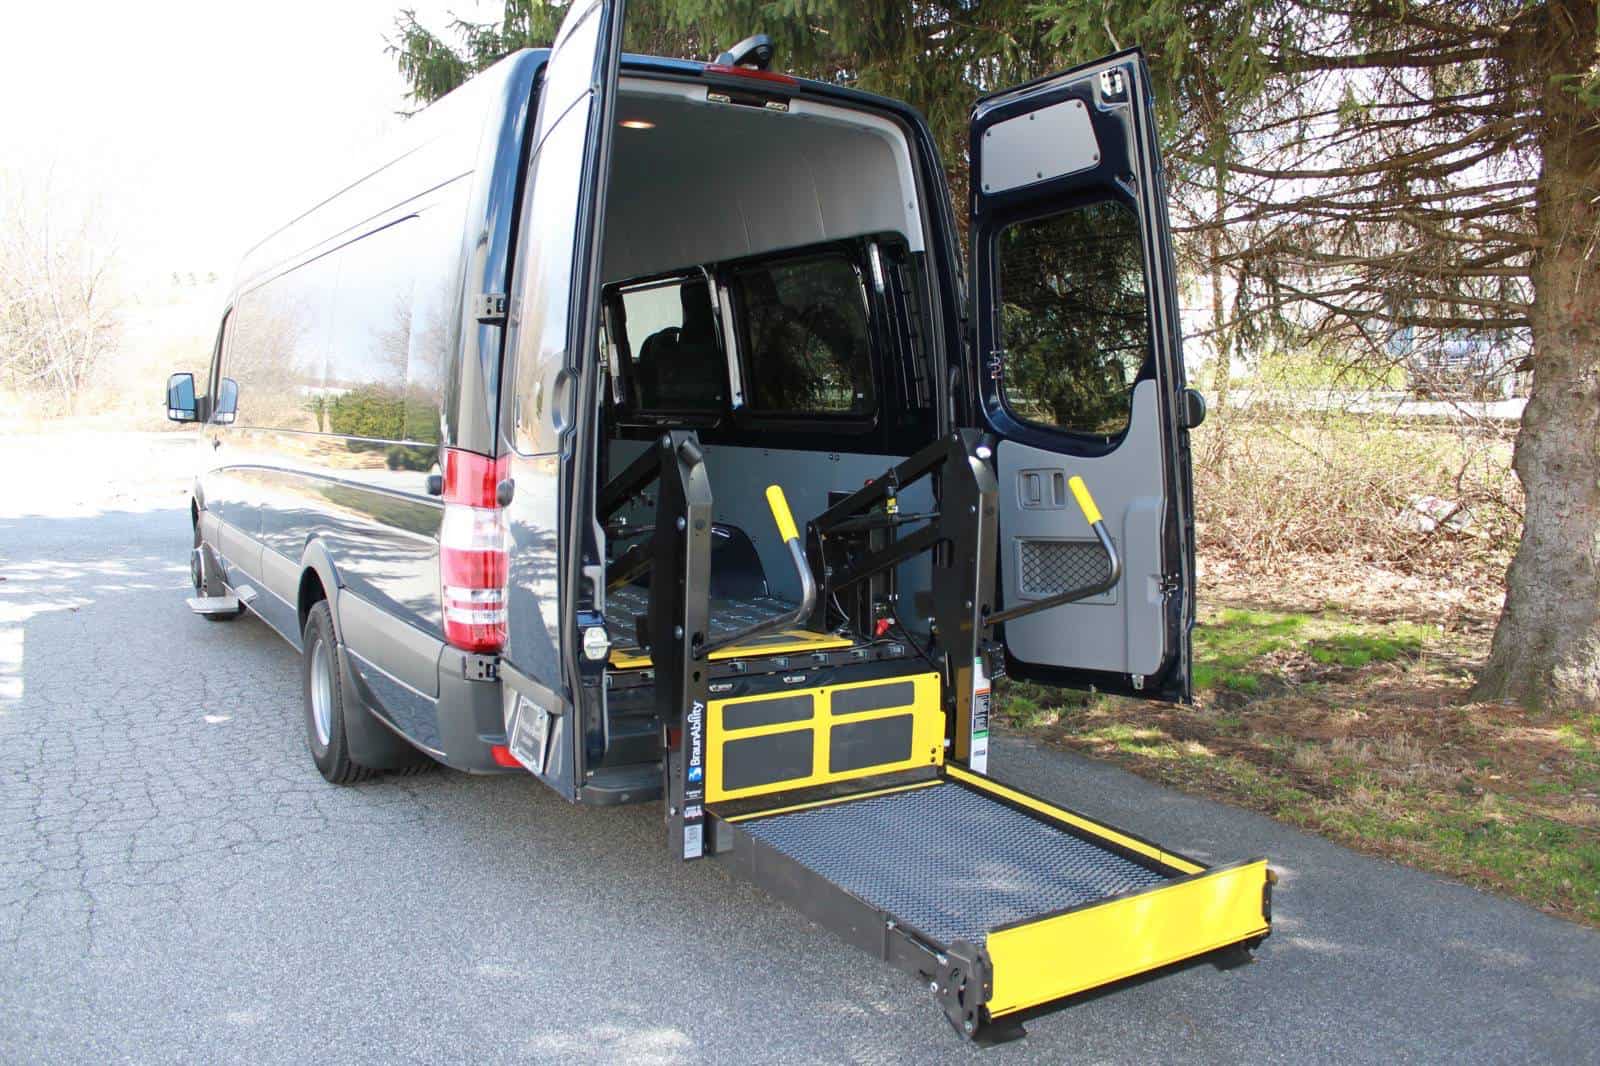 Handicapped Van (Abilitrax) Commercial Van Solutions LLC